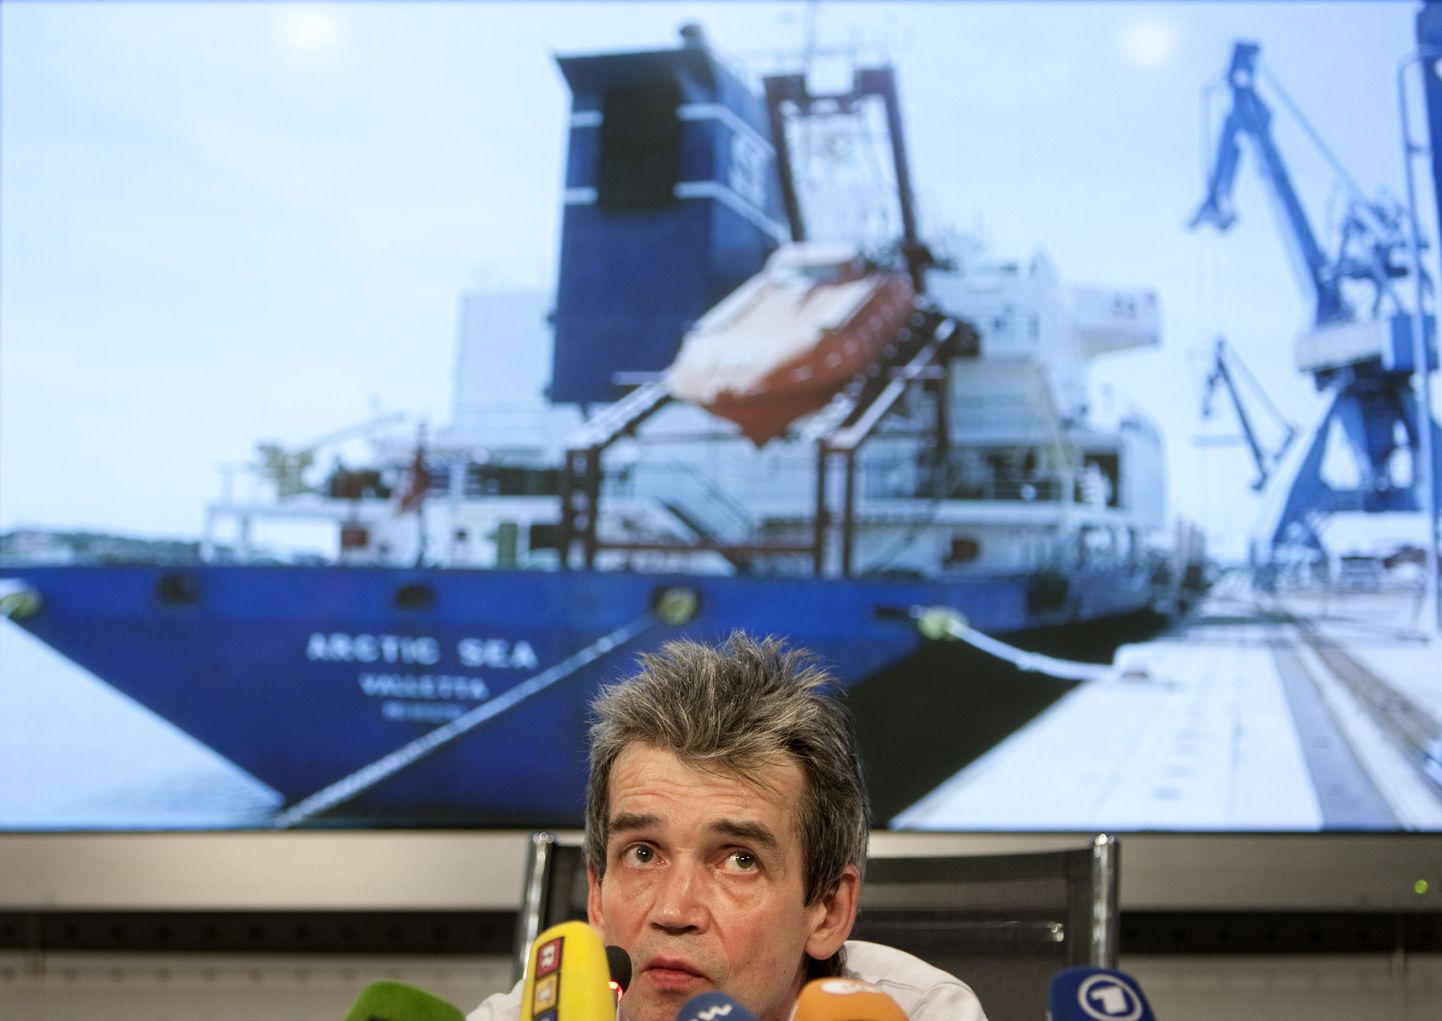 Merendusuudiste portaali Maritime Bulletin-Sovfracht toimetaja Mihhail Voitenko